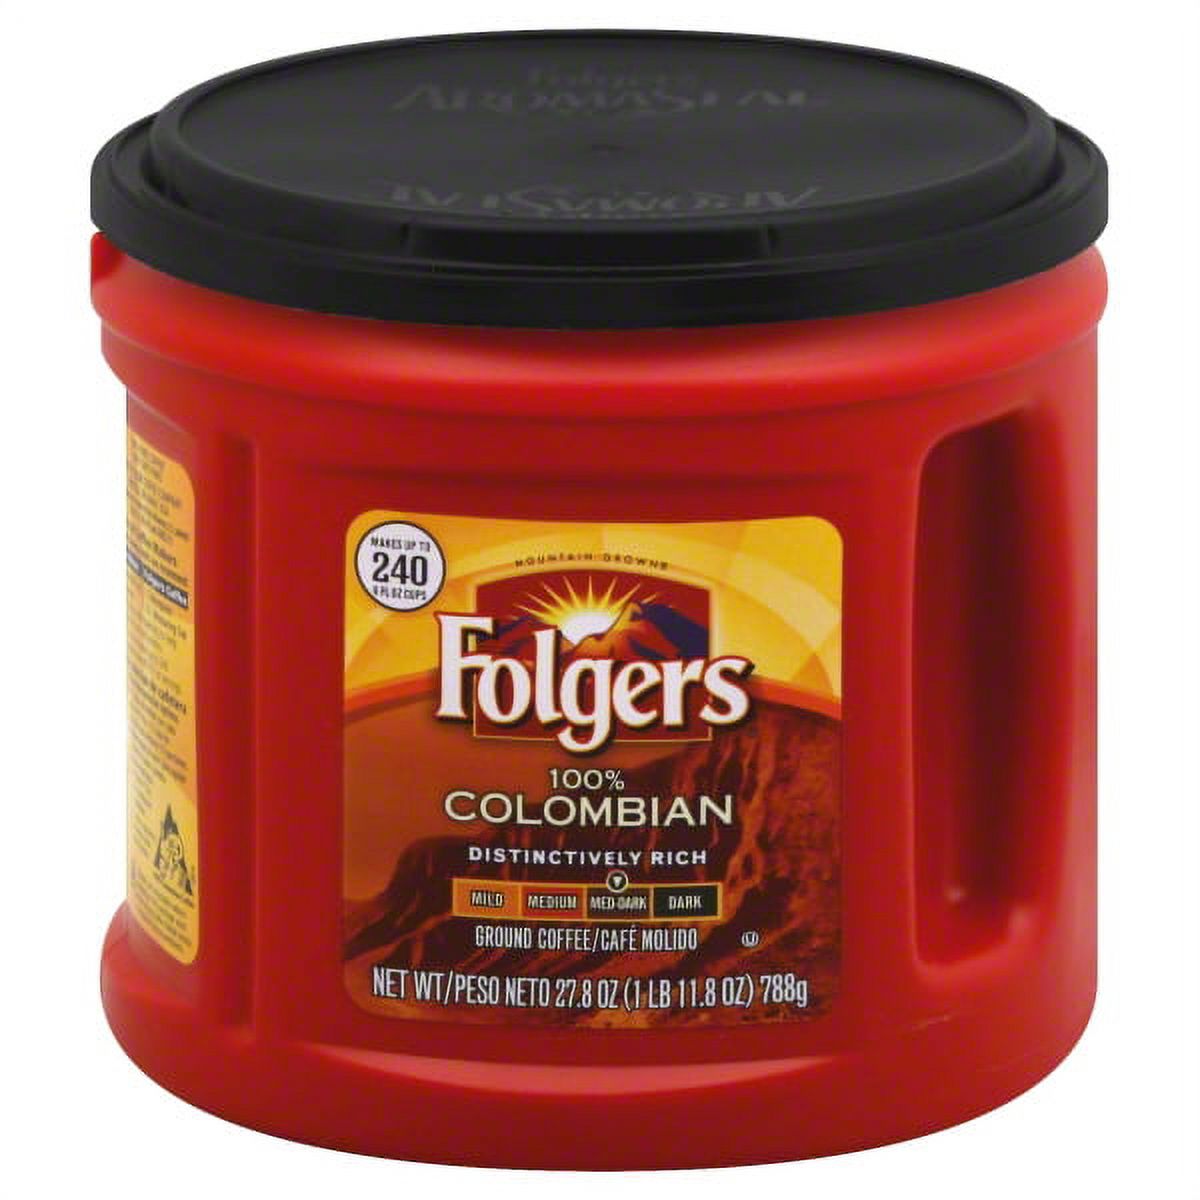 JM Smucker Folgers Coffee, 27.8 oz - image 1 of 1